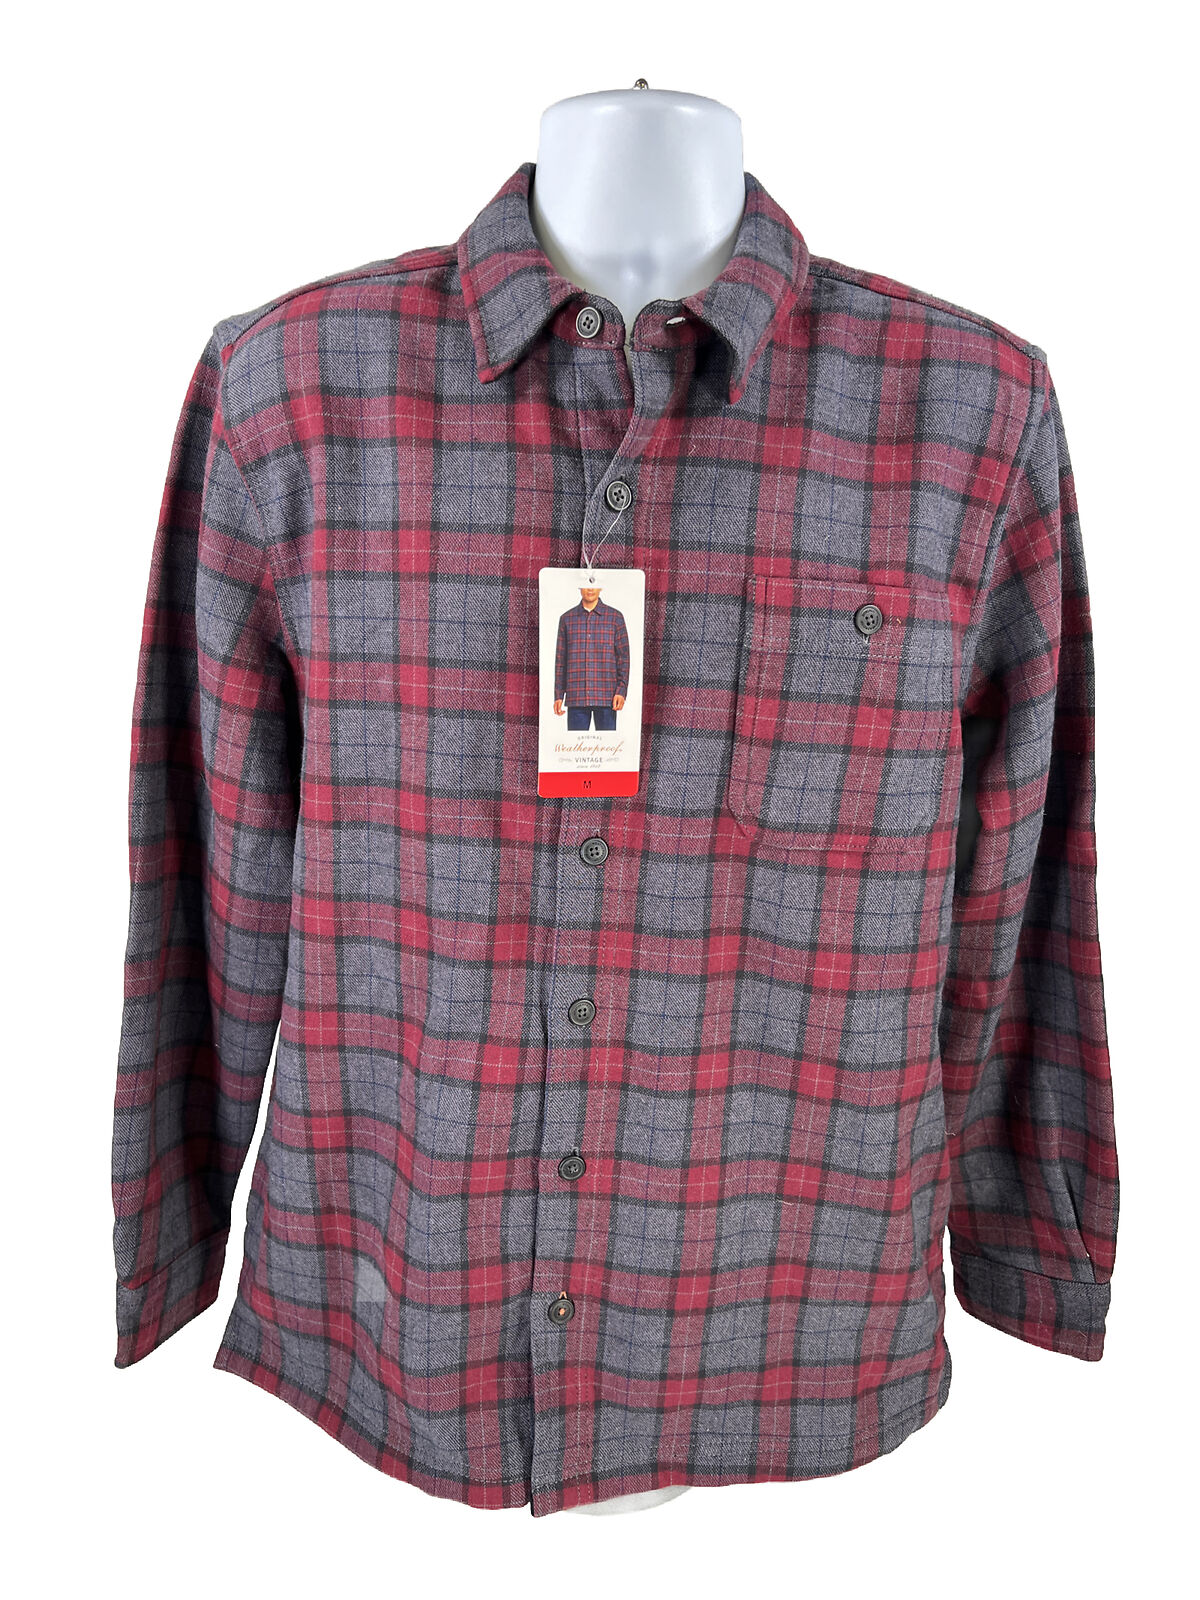 NUEVA camisa con botones y forro polar a cuadros rojo/azul resistente a la intemperie para hombre - M